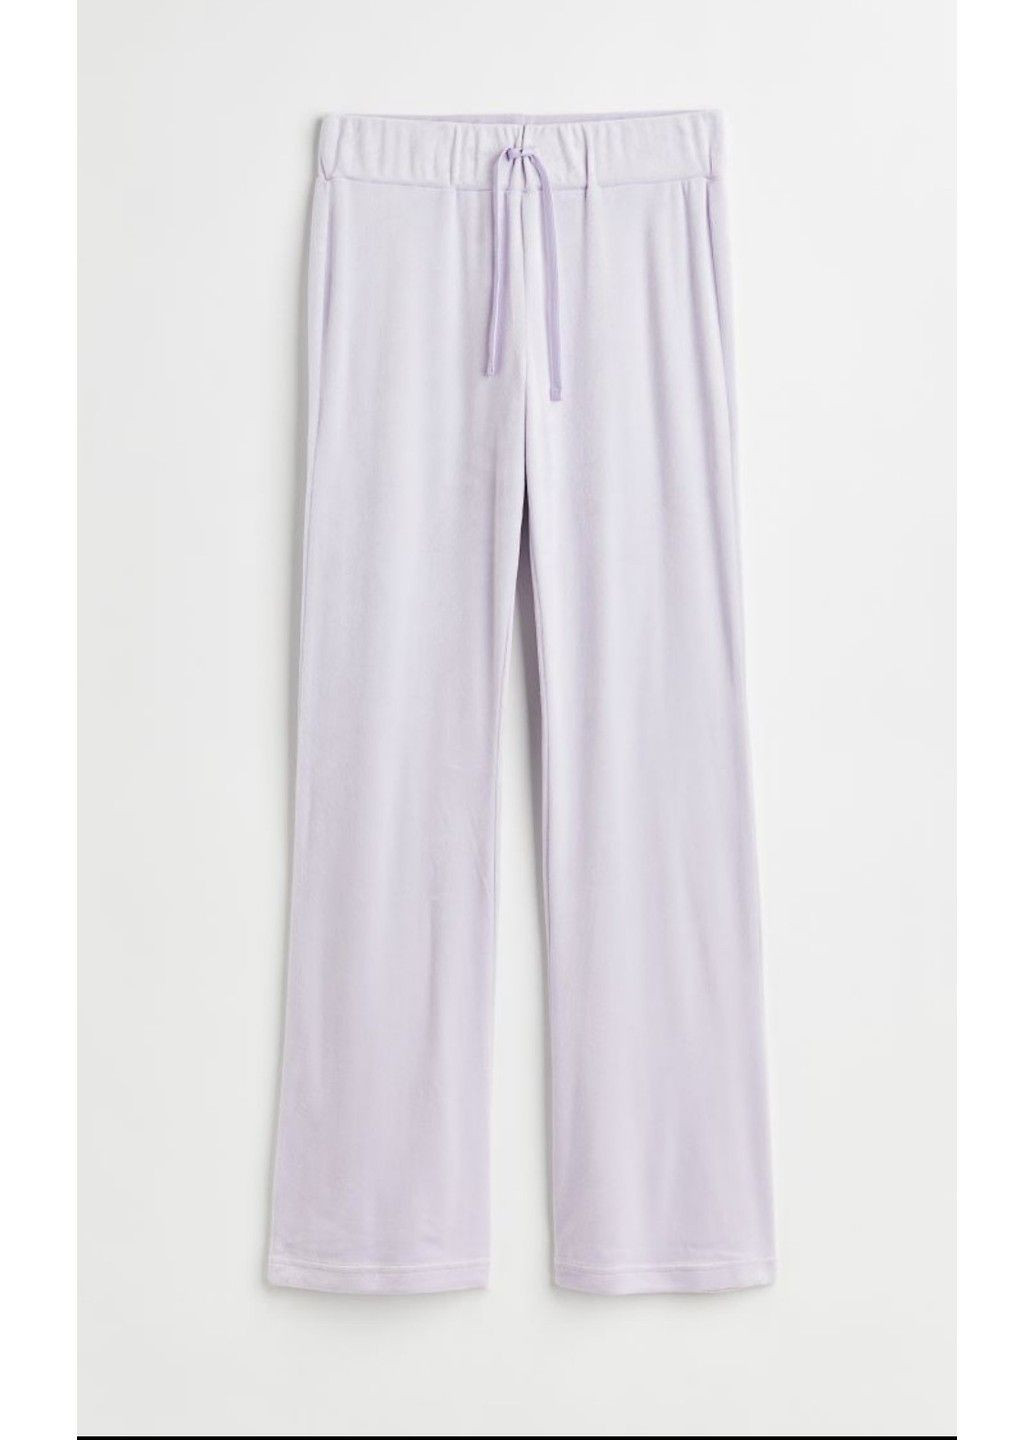 Фиолетовые спортивные летние брюки H&M